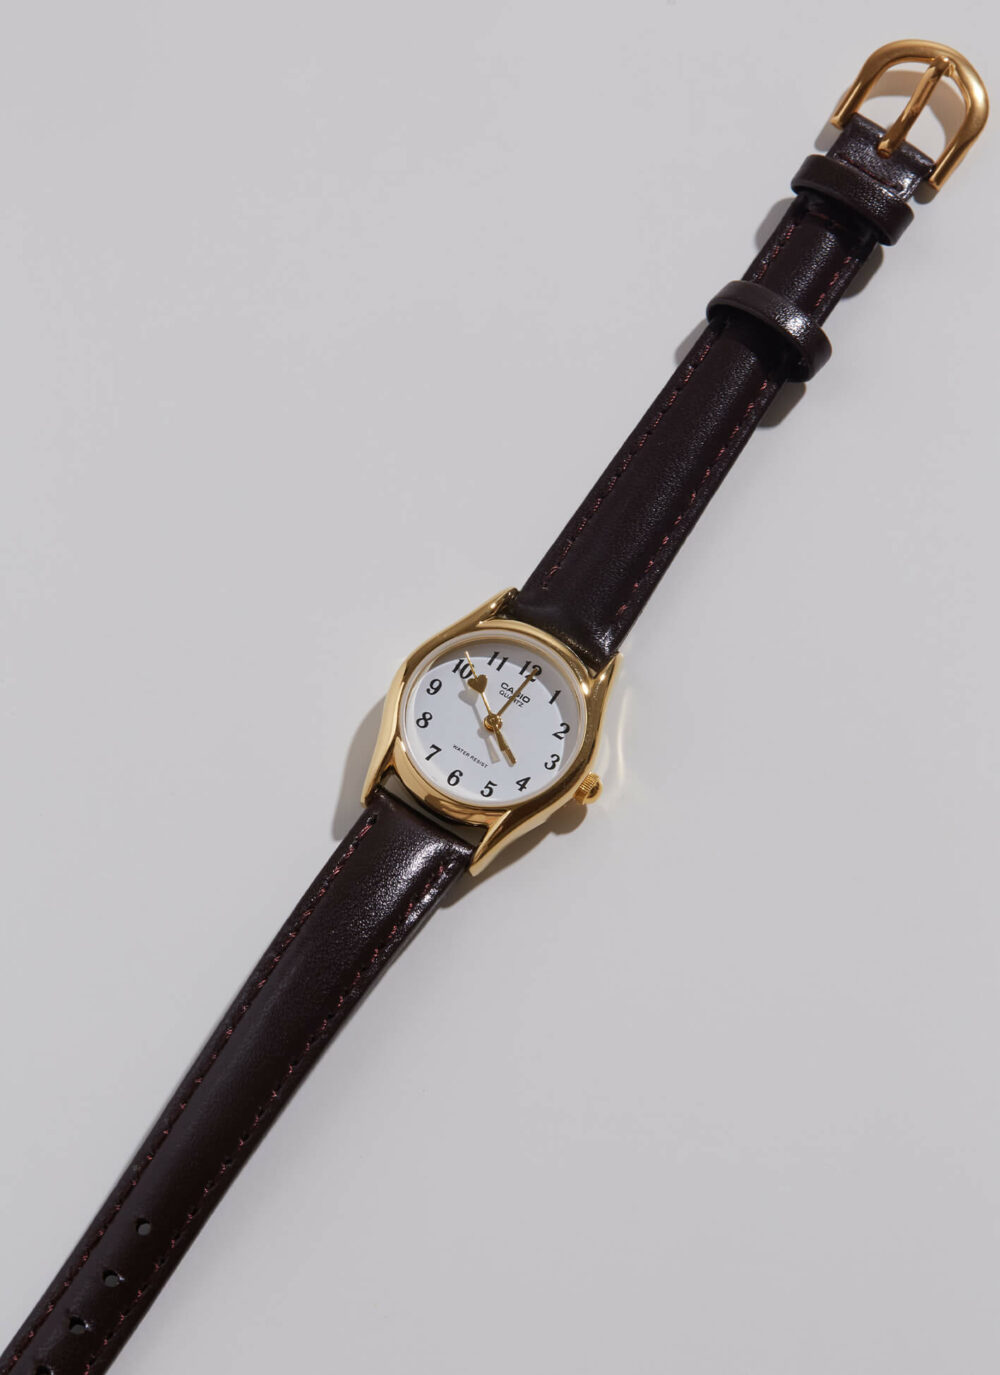 韓國飾品,手錶,CASIO手鍊,韓國手錶